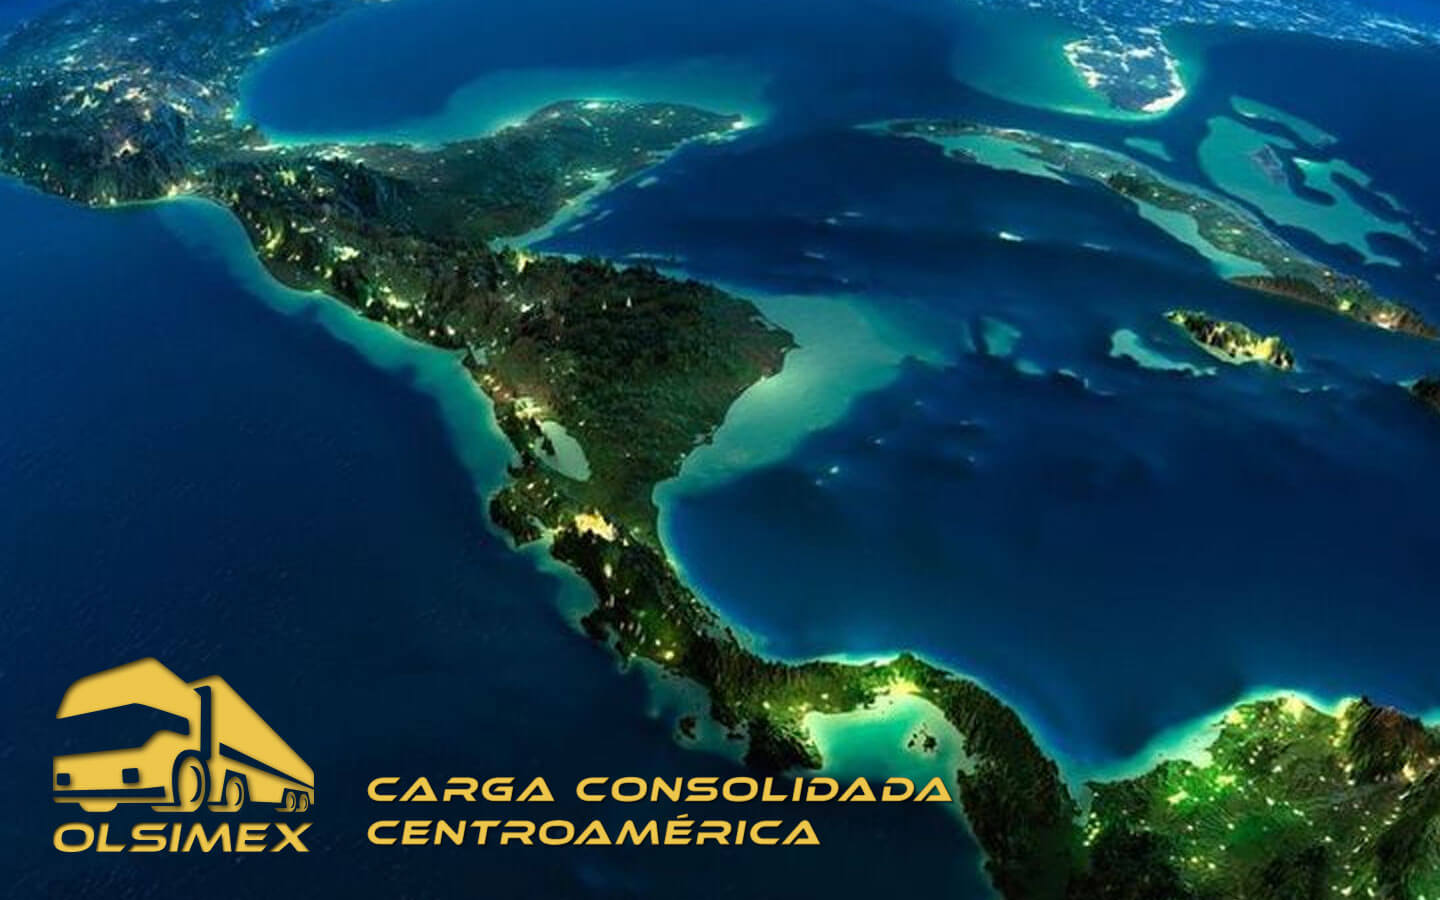 Carga Consolidada Centroamérica